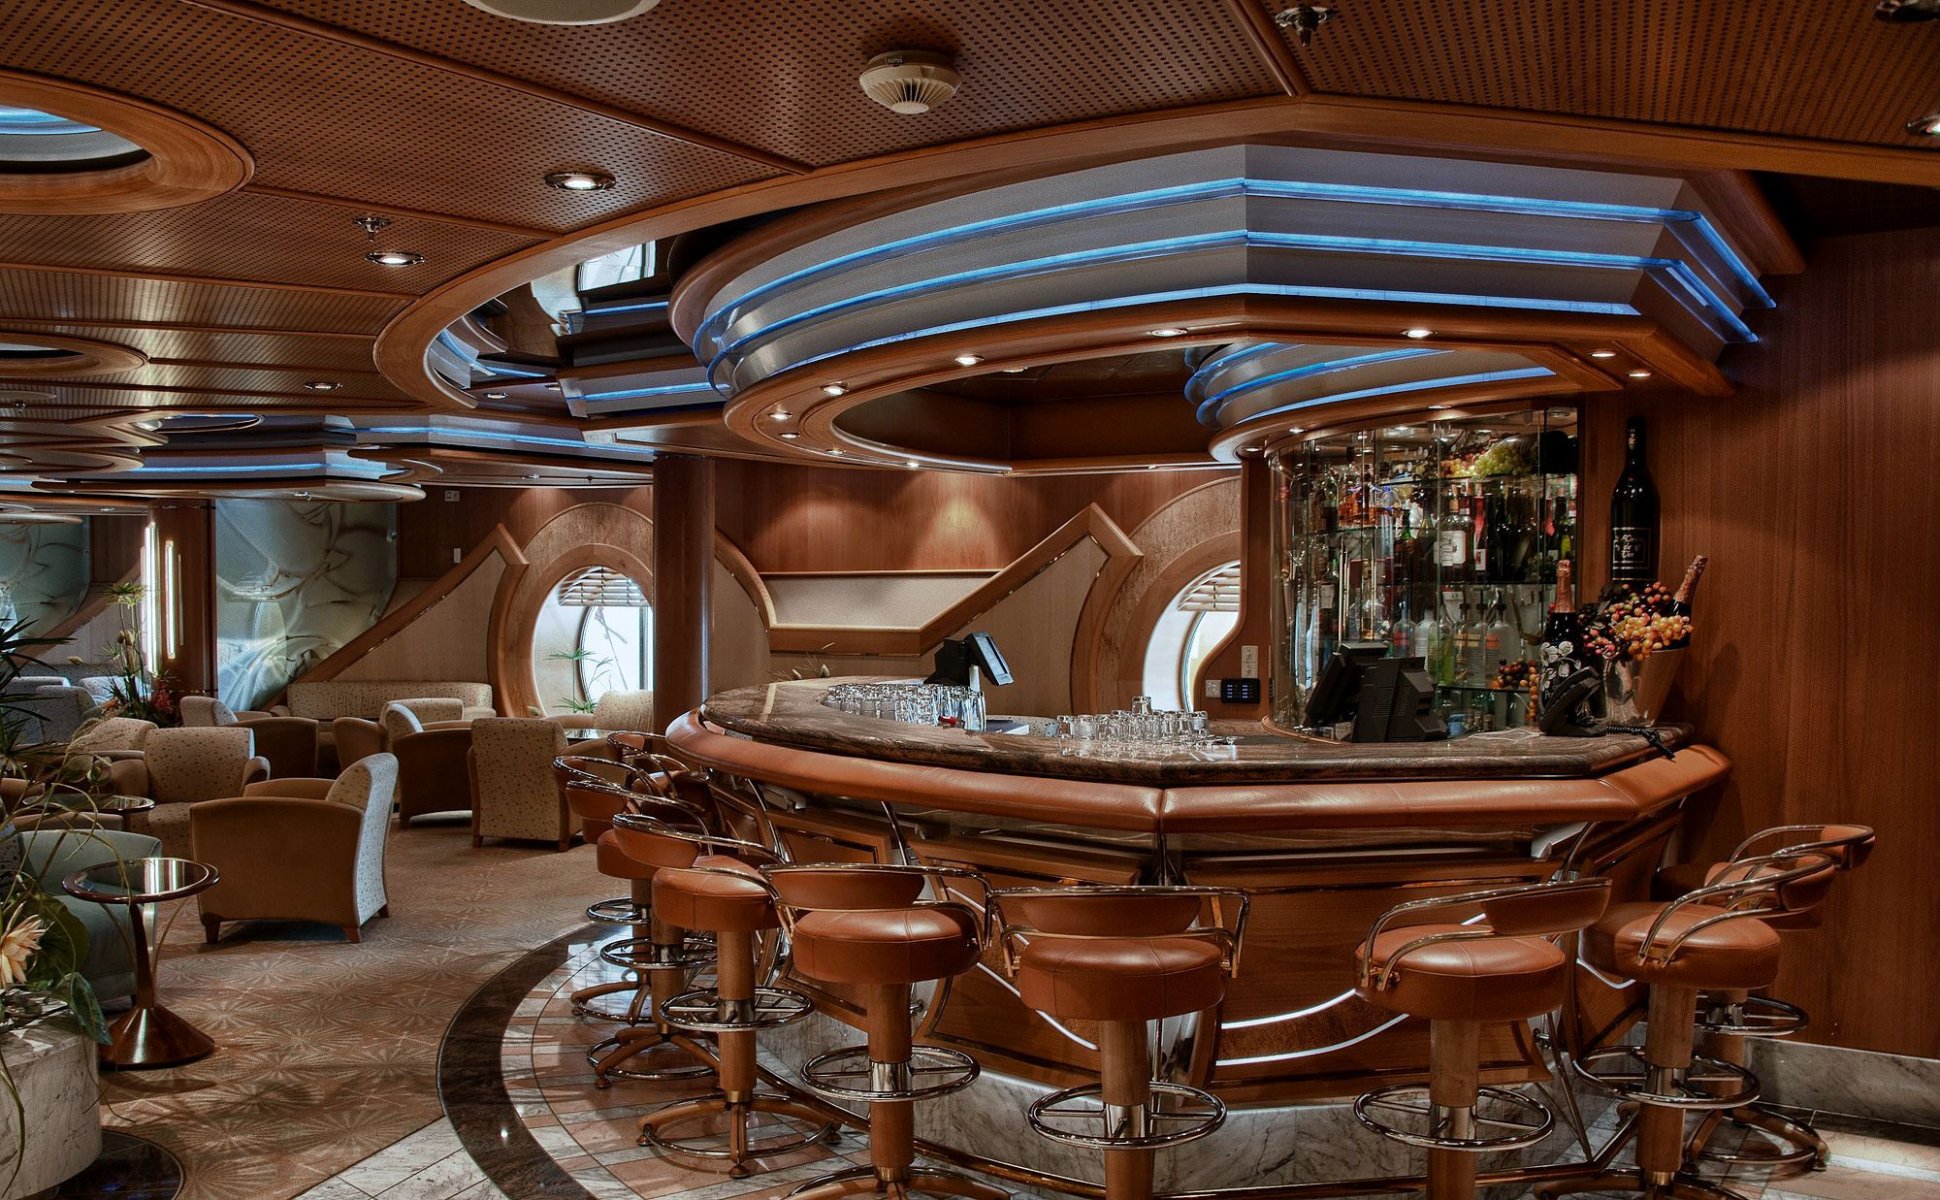 Ресторан в корабле